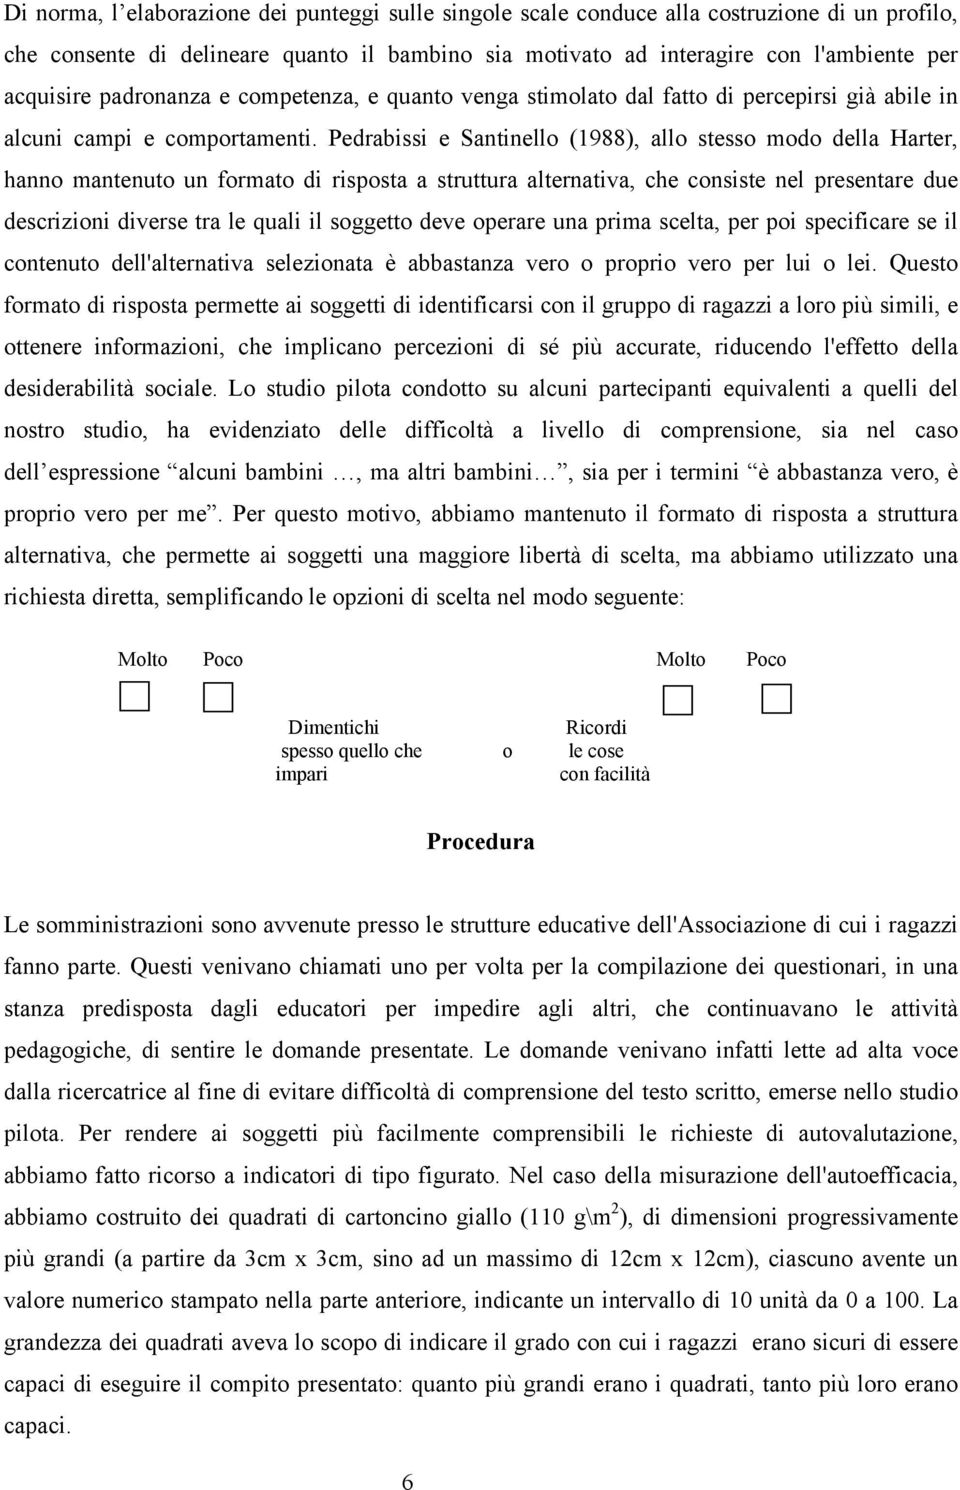 Pedrabissi e Santinello (1988), allo stesso modo della Harter, hanno mantenuto un formato di risposta a struttura alternativa, che consiste nel presentare due descrizioni diverse tra le quali il